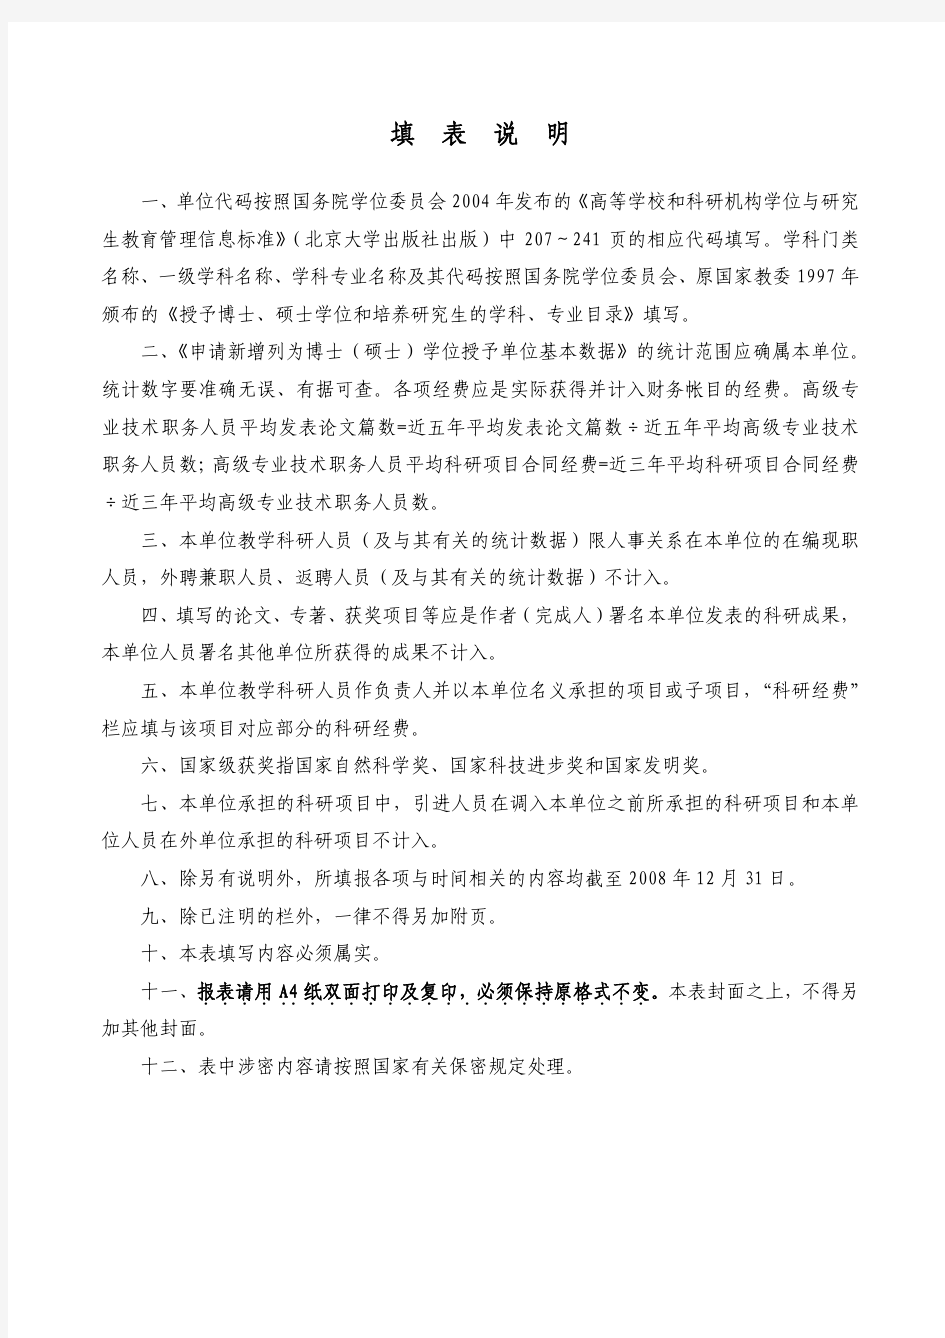 江苏省申请博士学位授权立项建设单位情况表